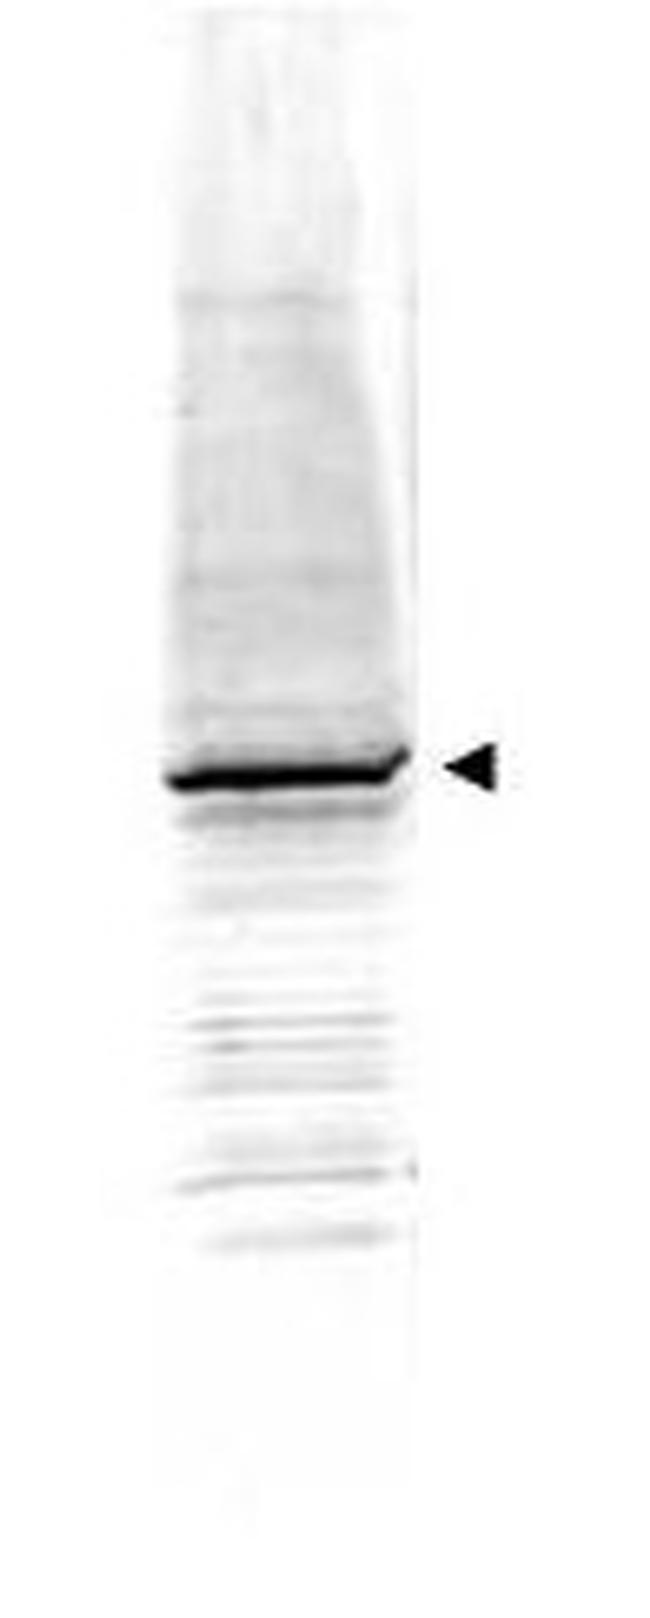 EGR-1 Antibody in Western Blot (WB)